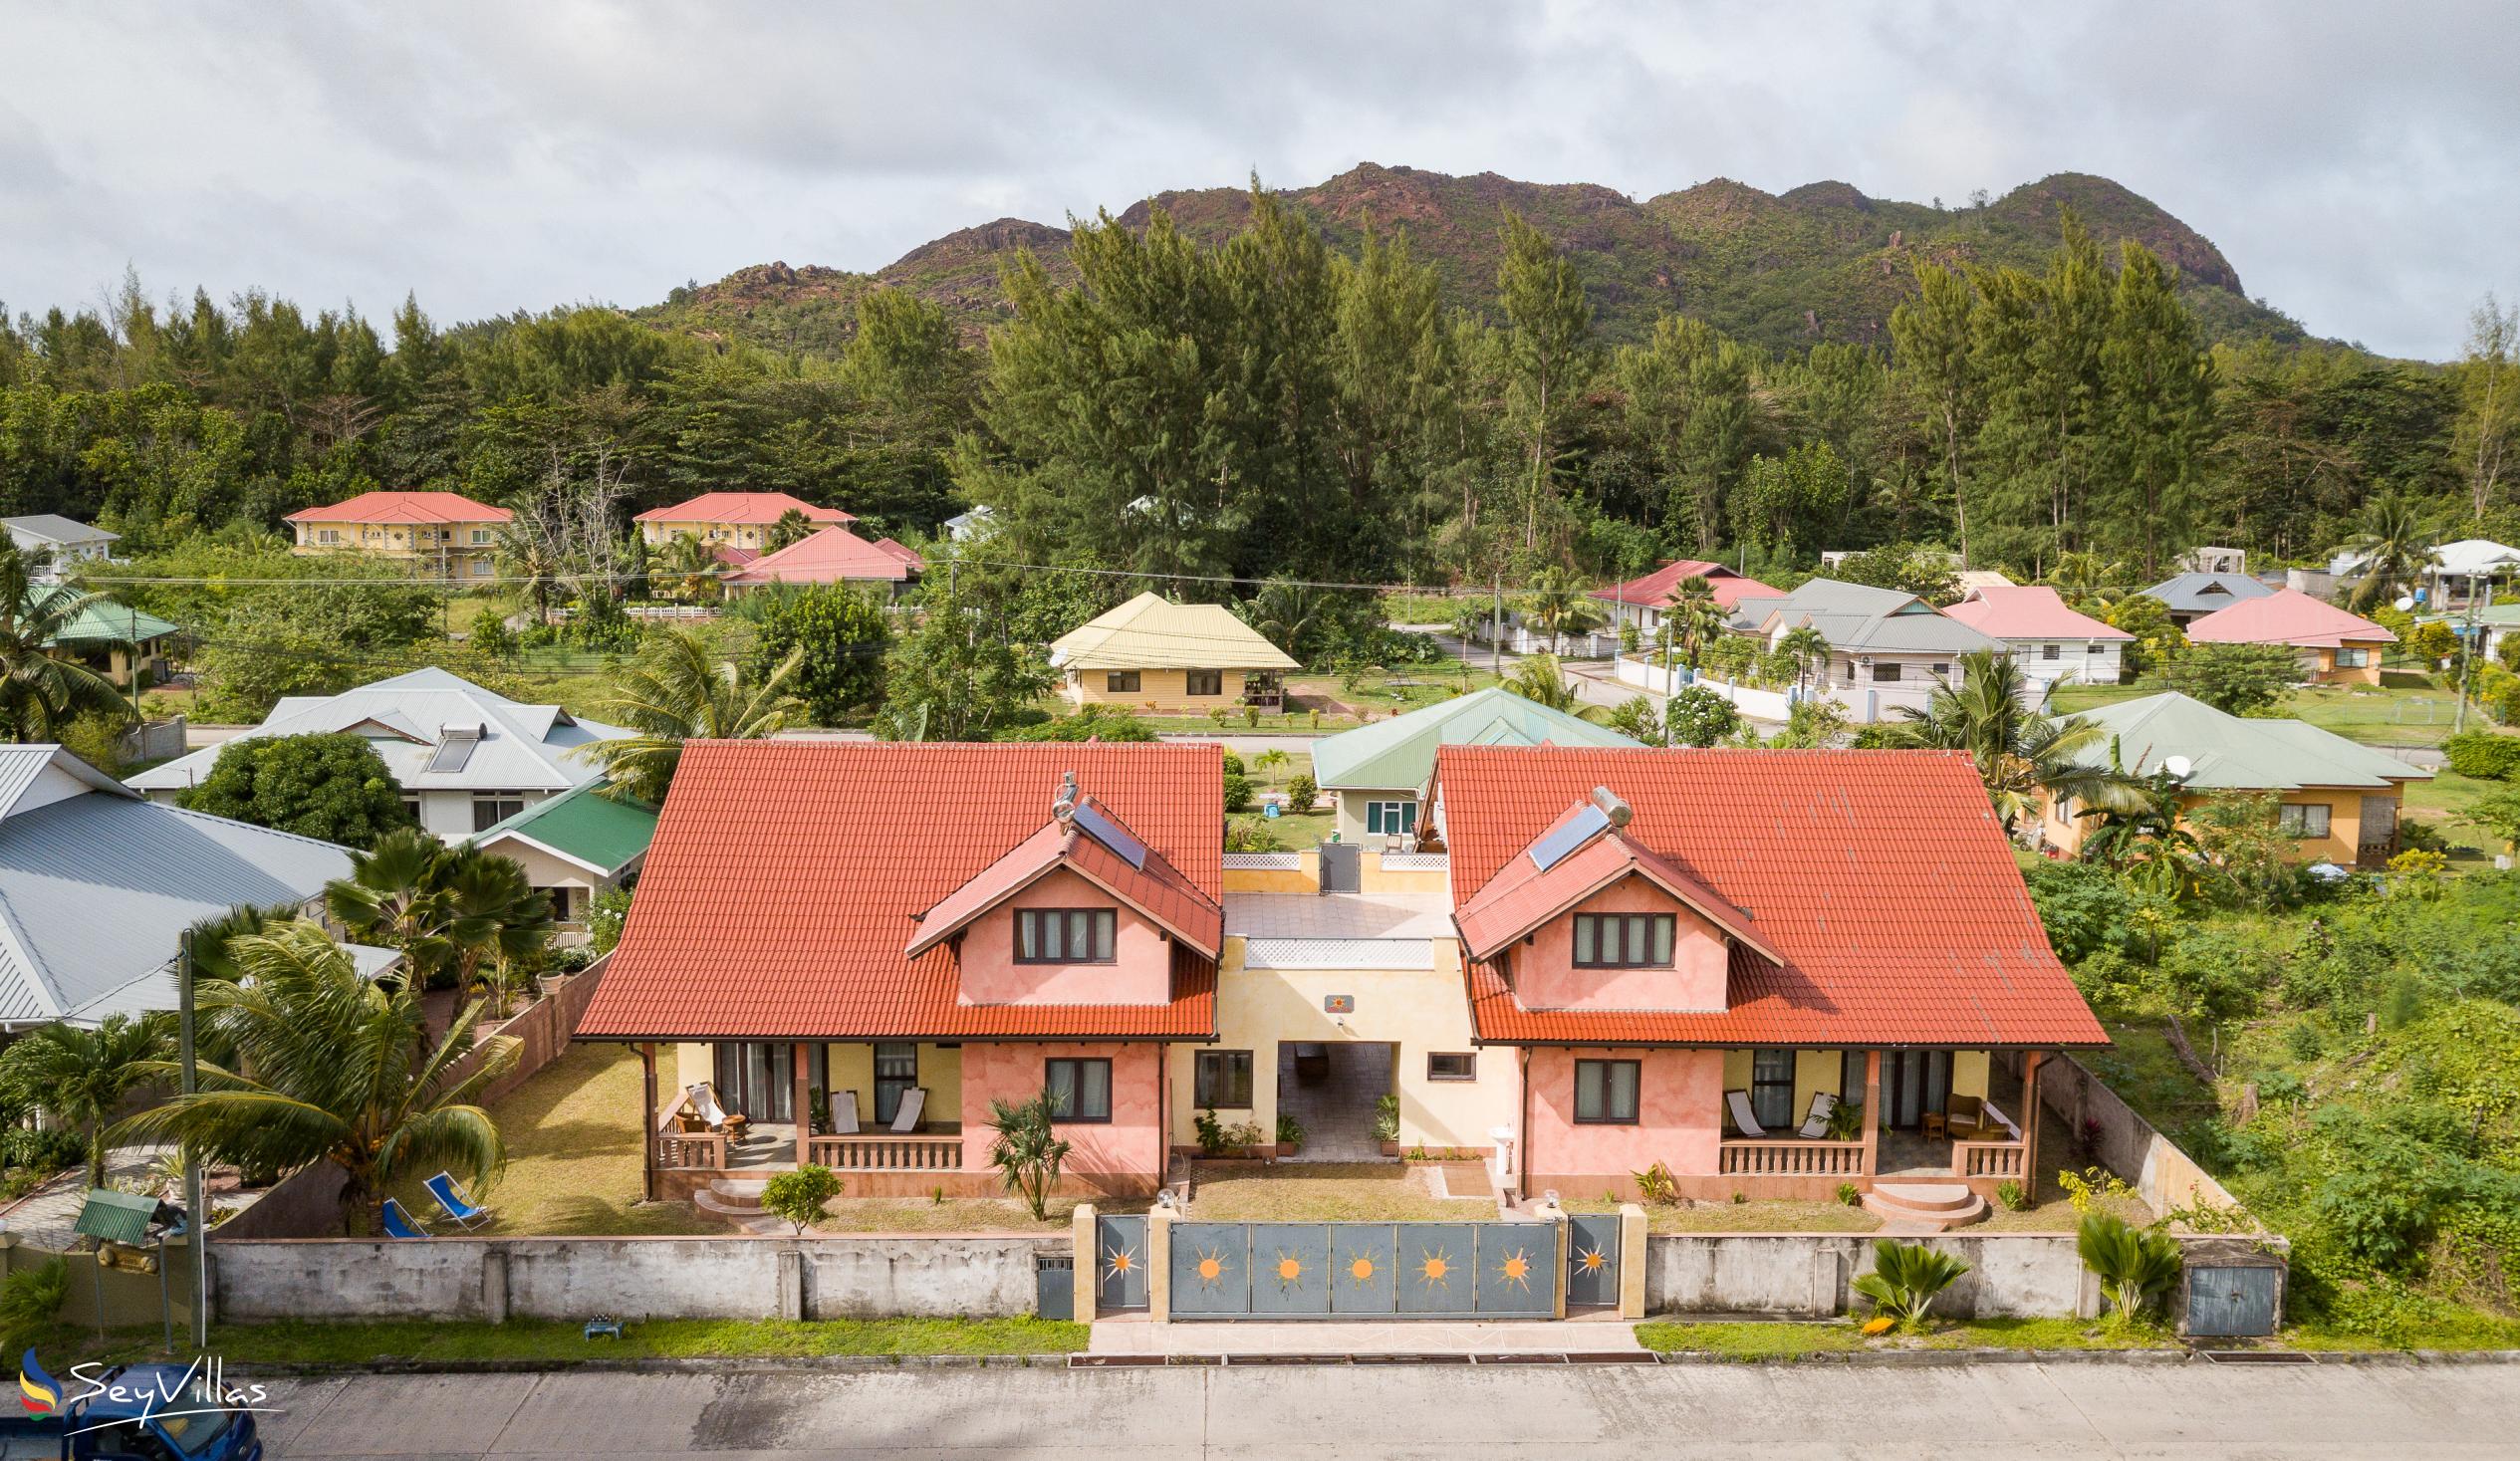 Foto 2: Villa Sole - Aussenbereich - Praslin (Seychellen)